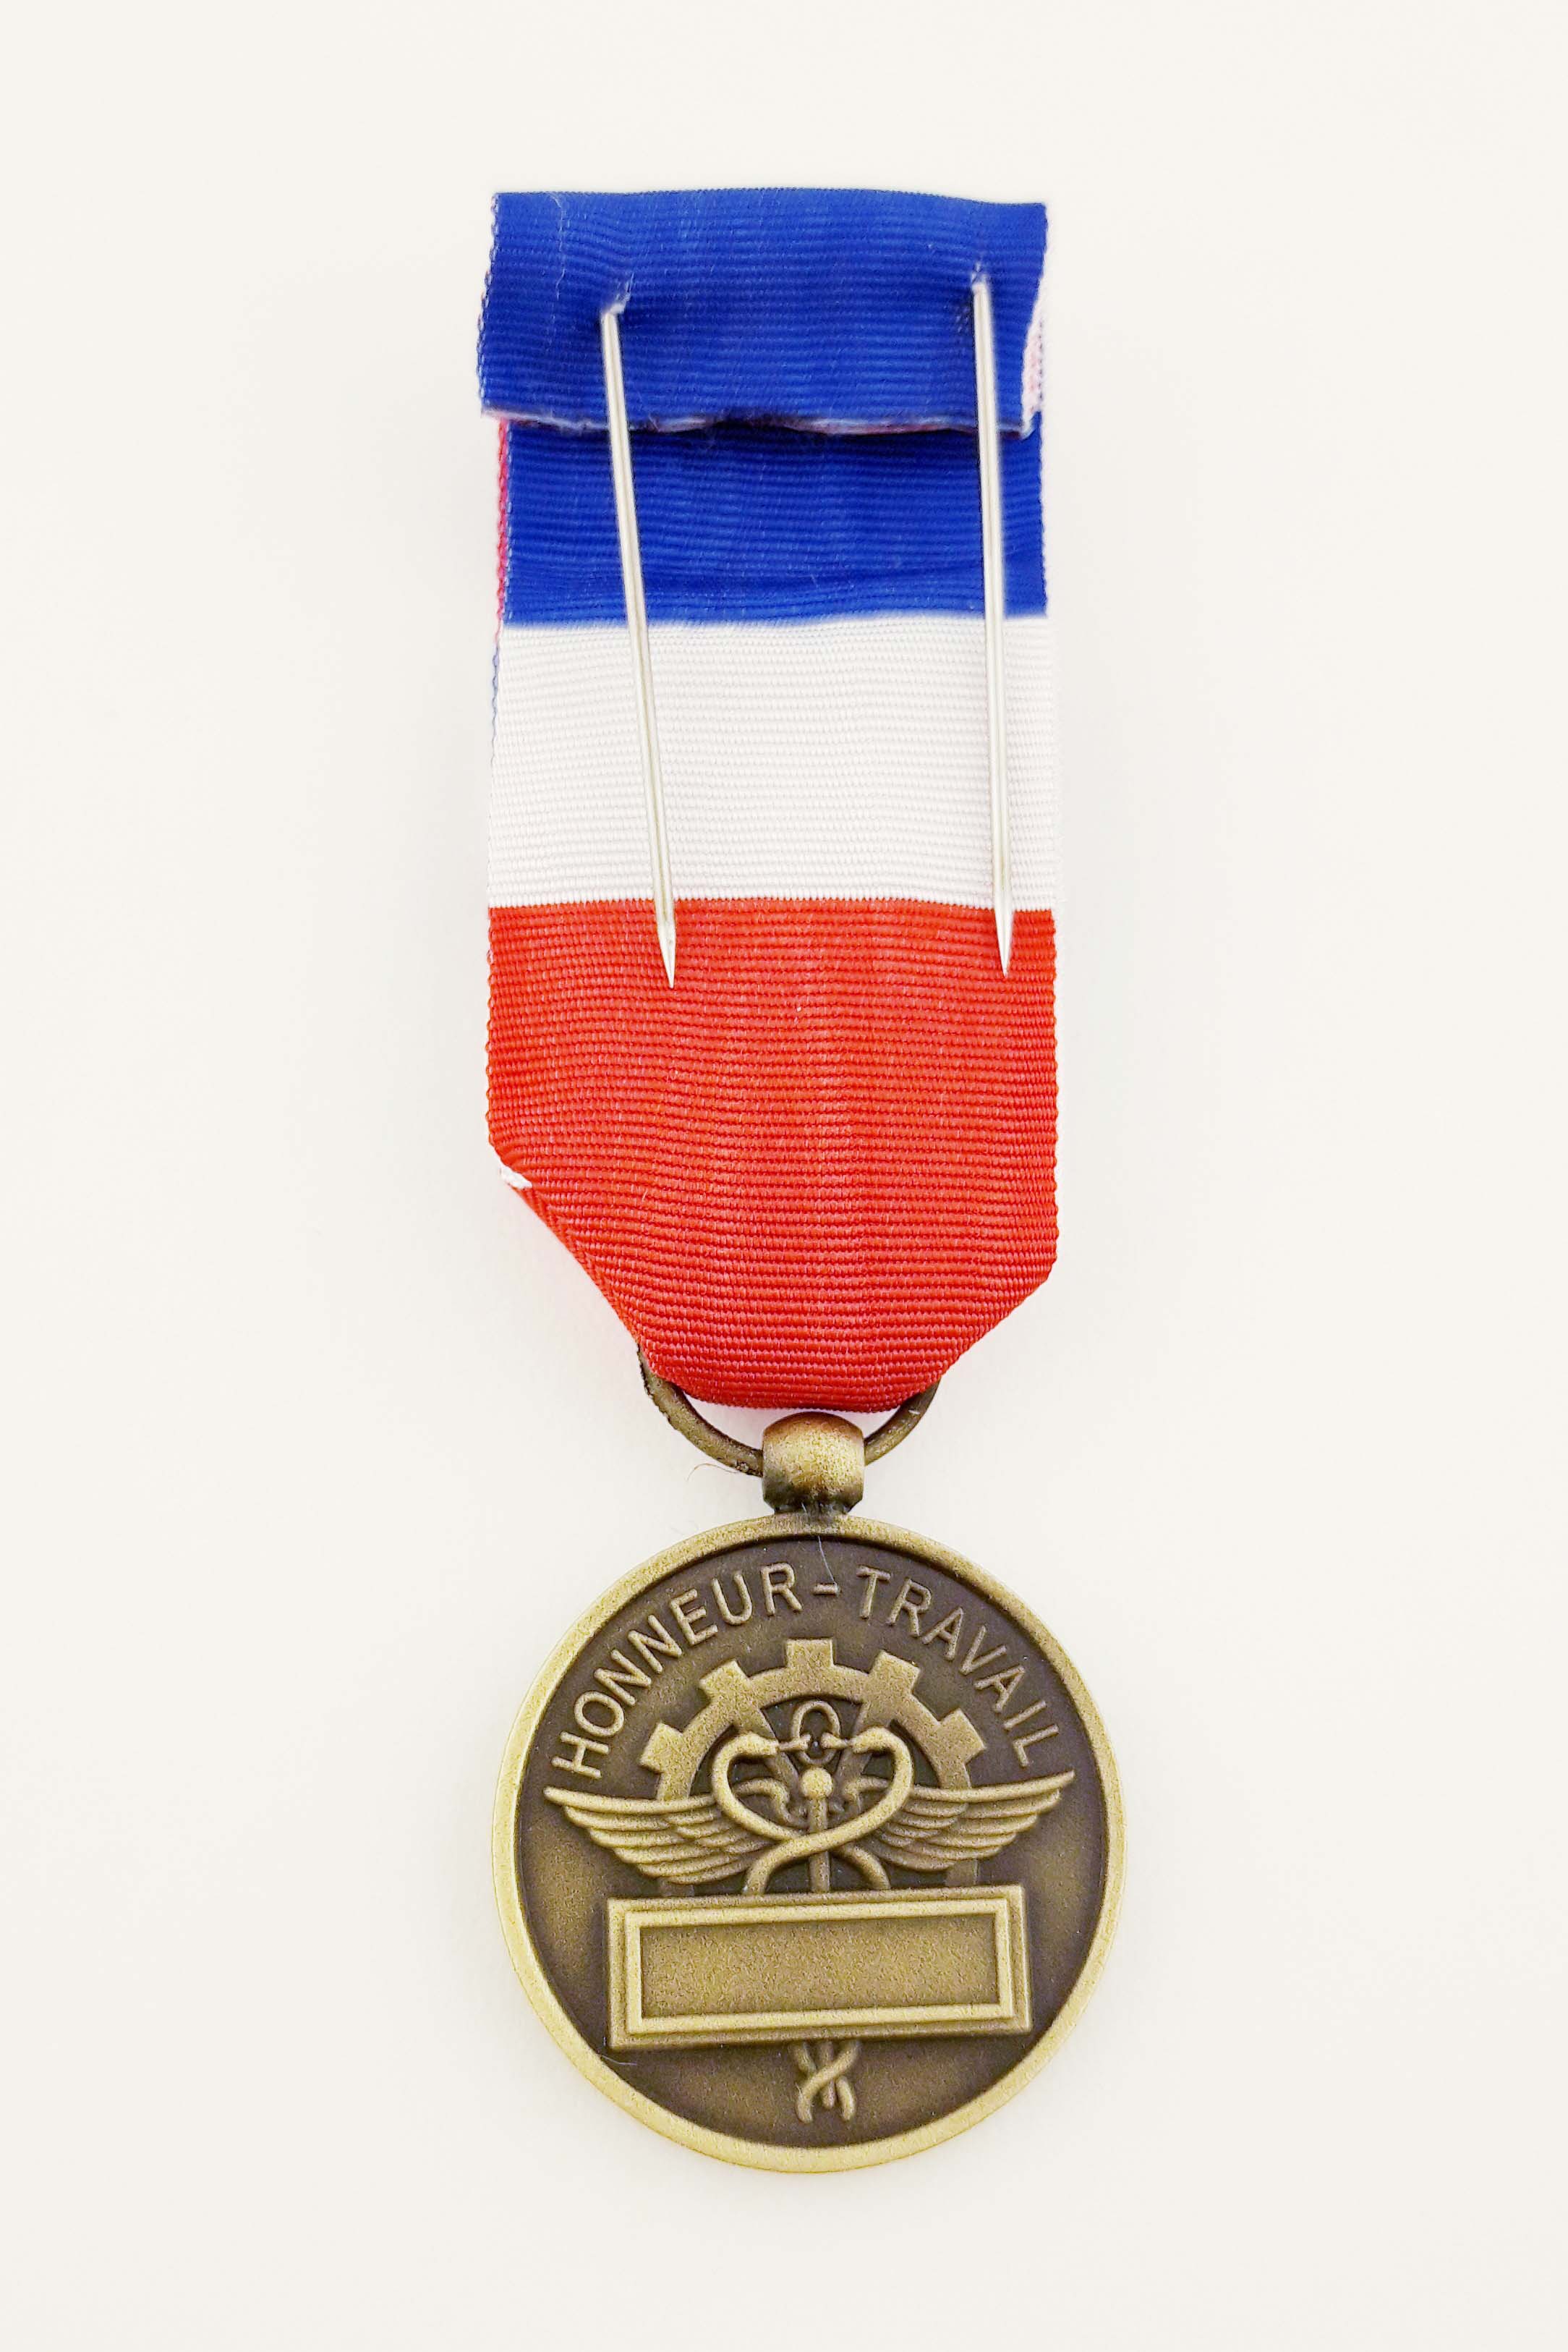 Médaille du Travail Grand Or en métal doré